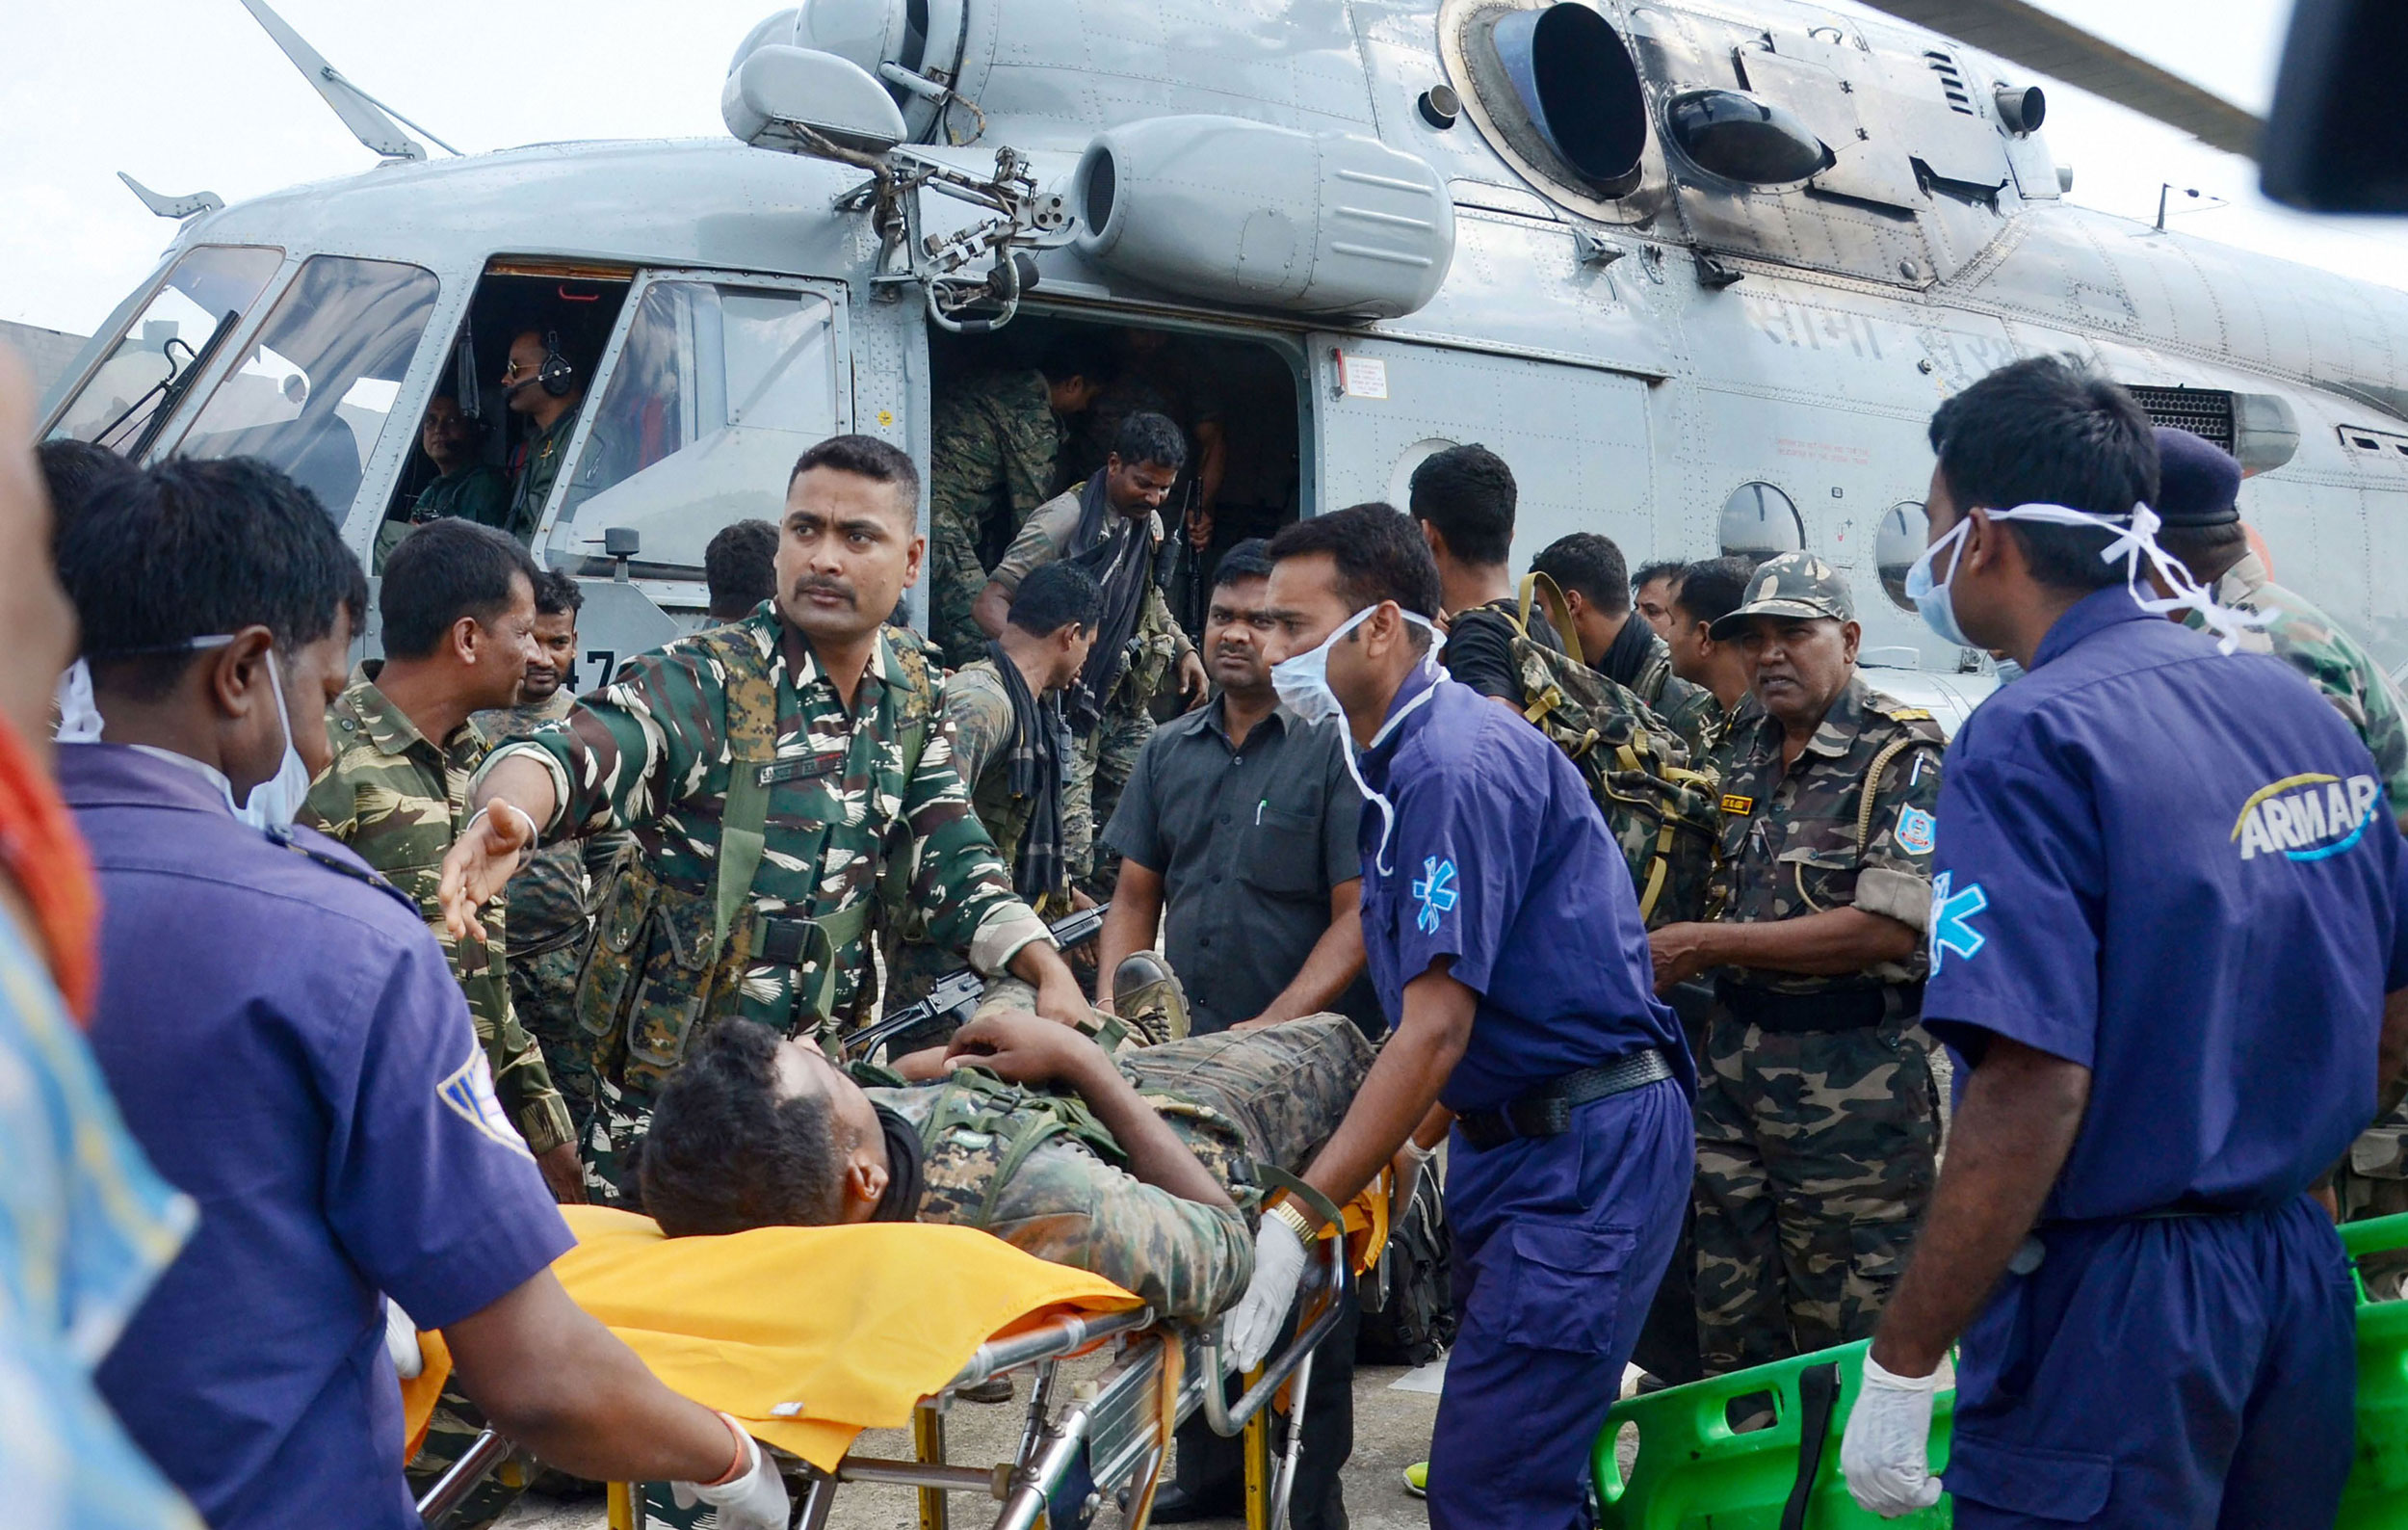 झारखंड में CRPF यूनिट पर हमला IED विस्फोट में एक जवान की मौत और 2 घायल